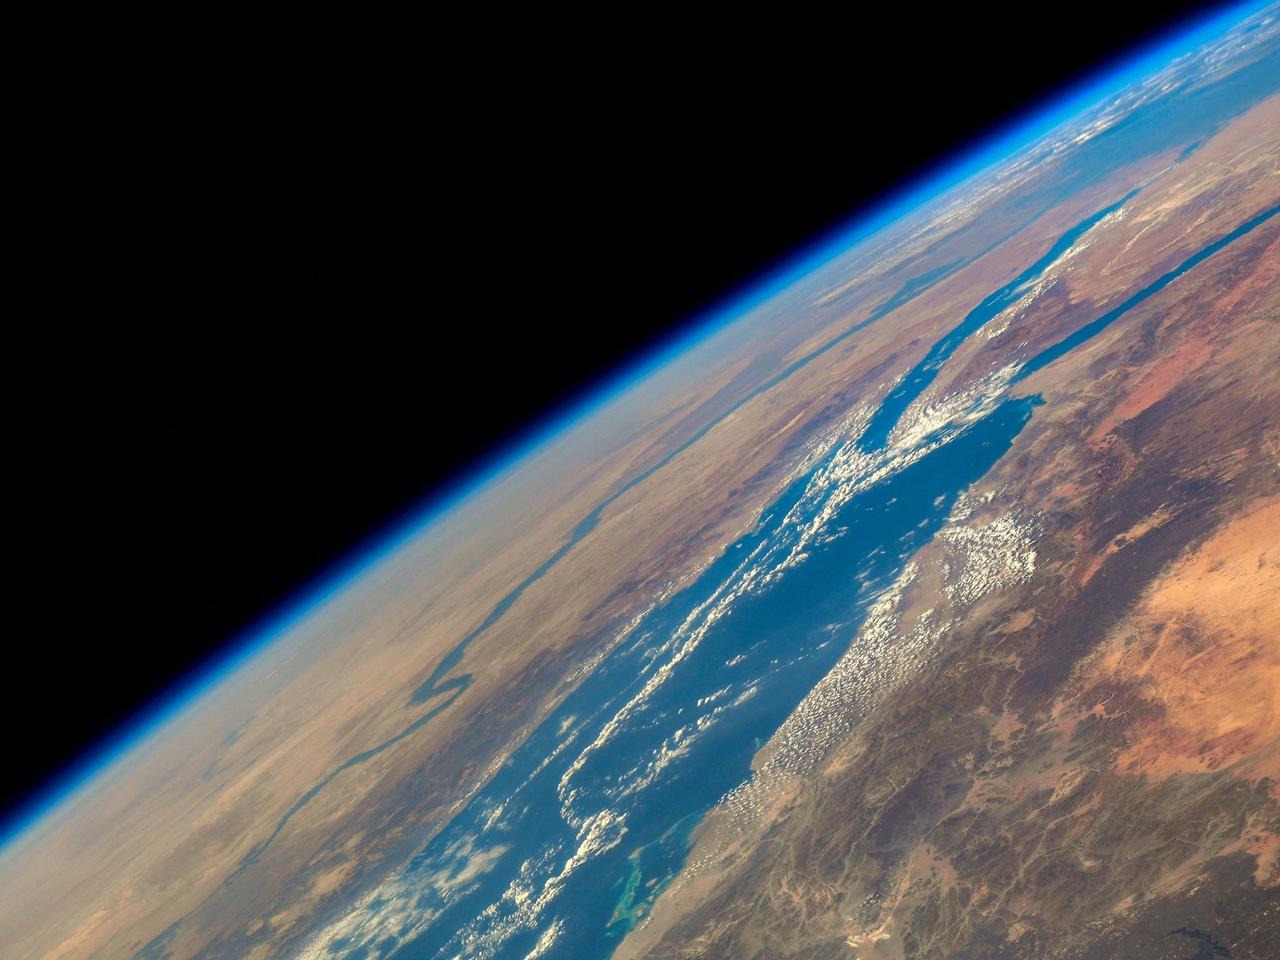 アフリカの紅海とナイル川の向こうの地平線に、地球大気の薄く青い層が見える。2021年2月3日撮影。